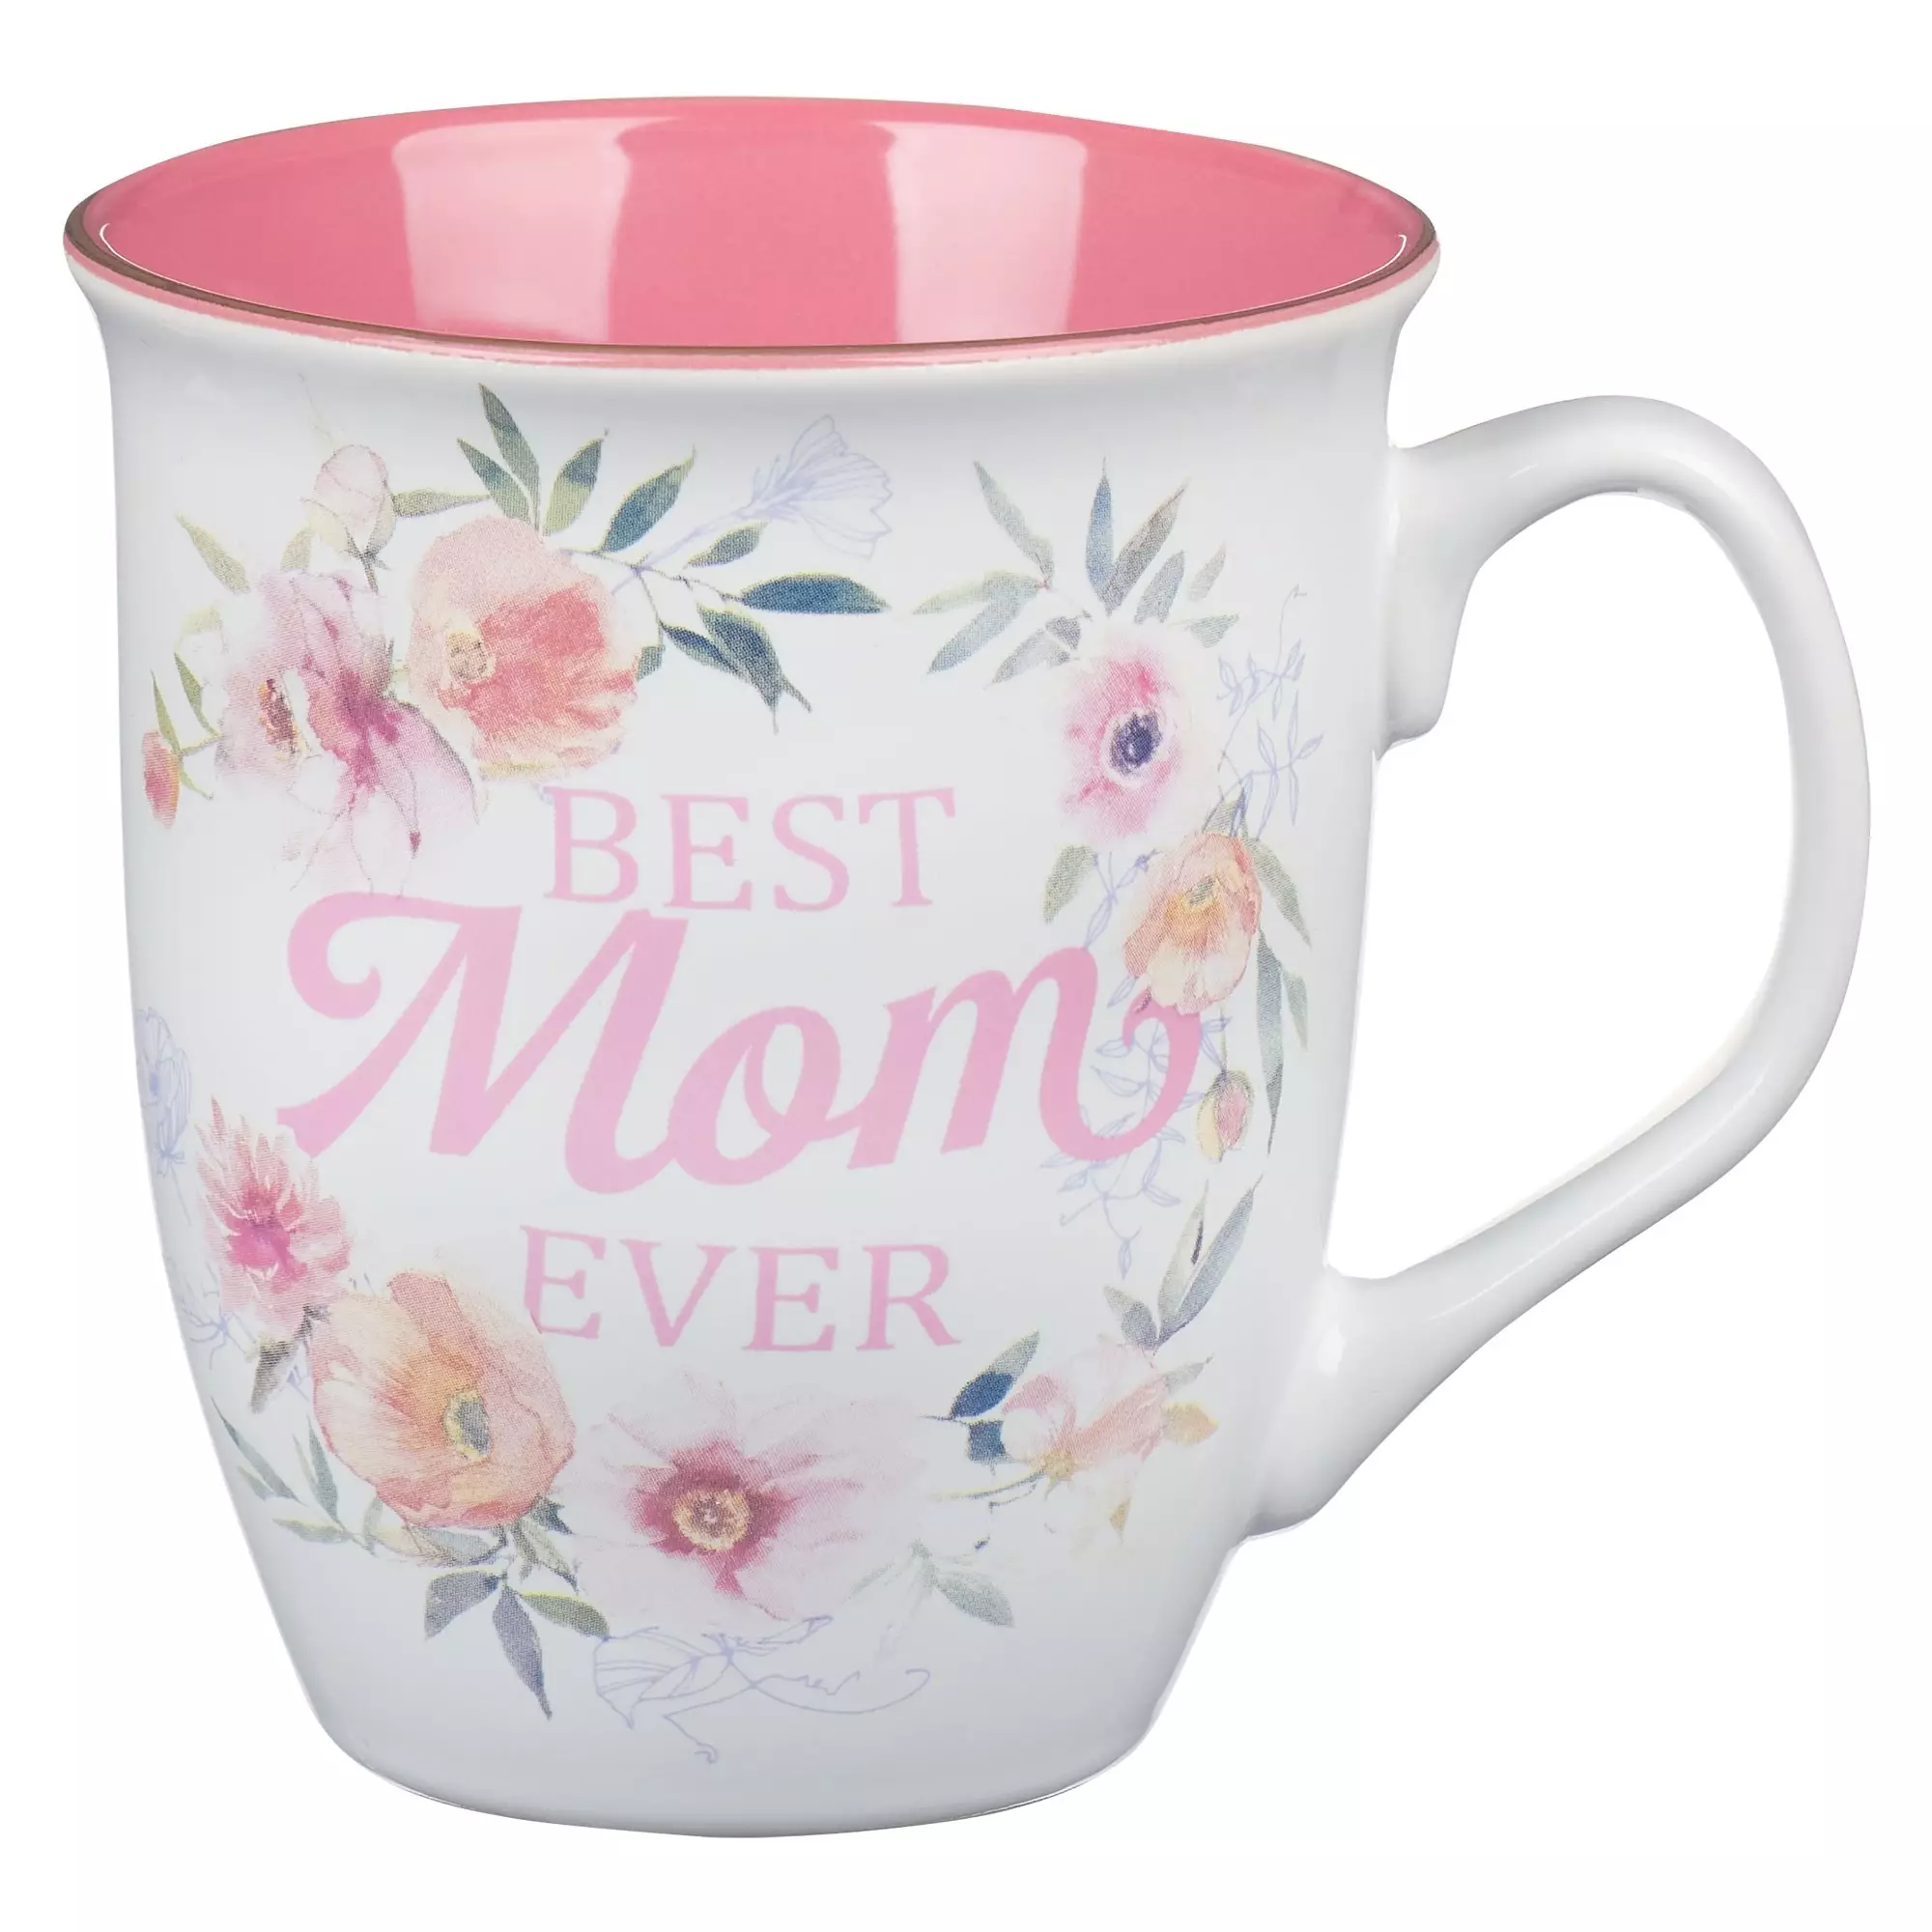 Mug Pink/White Floral Best Mom Ever Num. 6:24